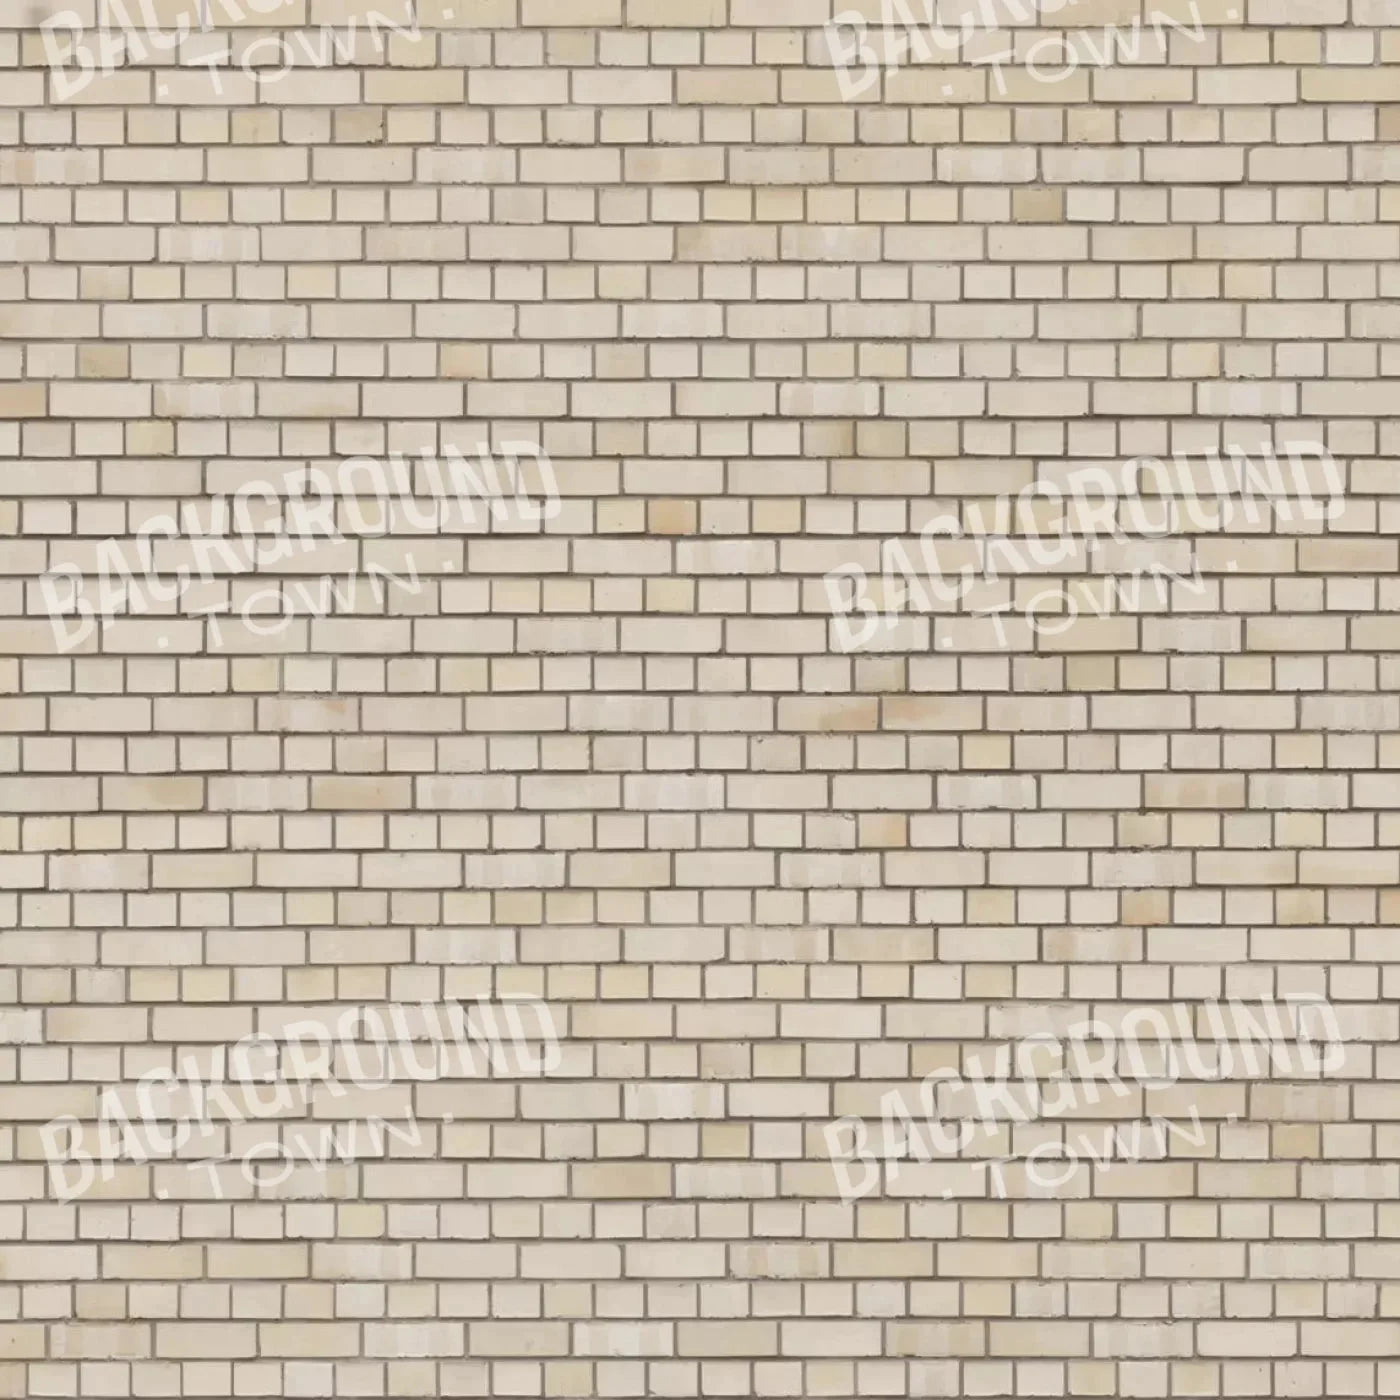 Brickwork Rubbermat Floor 8X8 ( 96 X Inch )